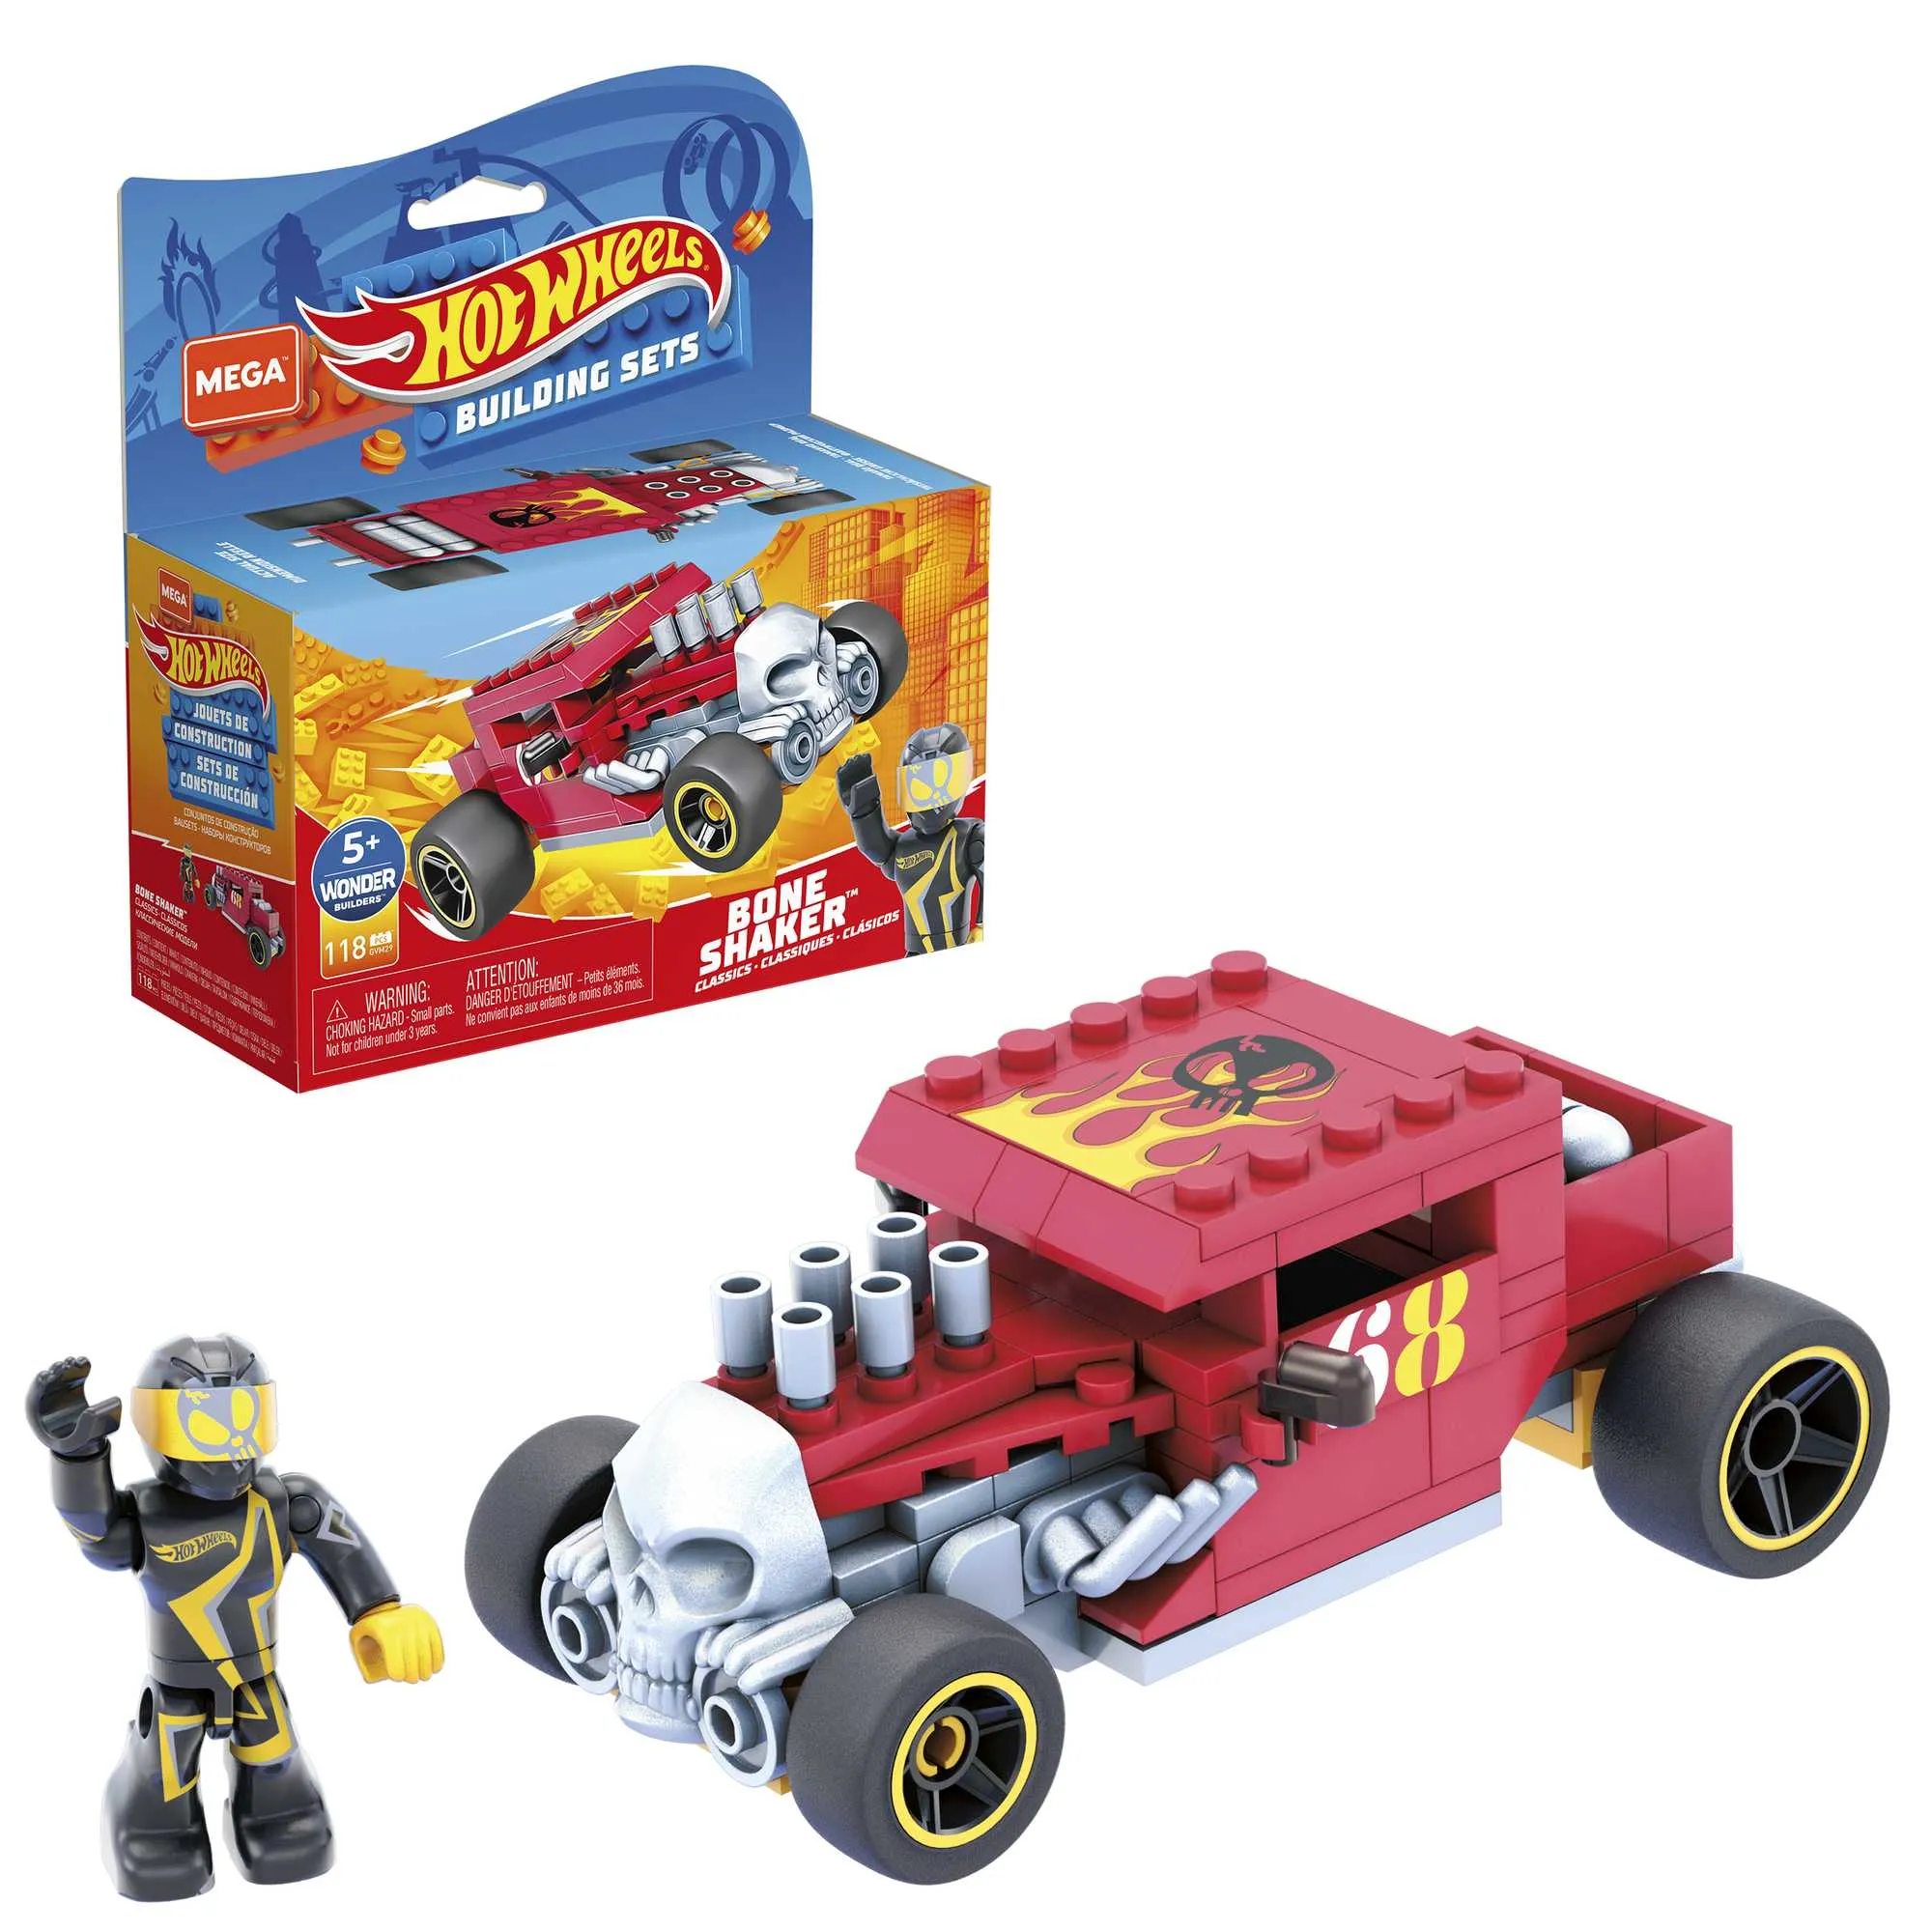 + Hot Wheels™ Bone Shaker Fahrzeug zum zusammenbauen, Spielzeug Bauset, für Kinder ab 5 Jahren Gallery